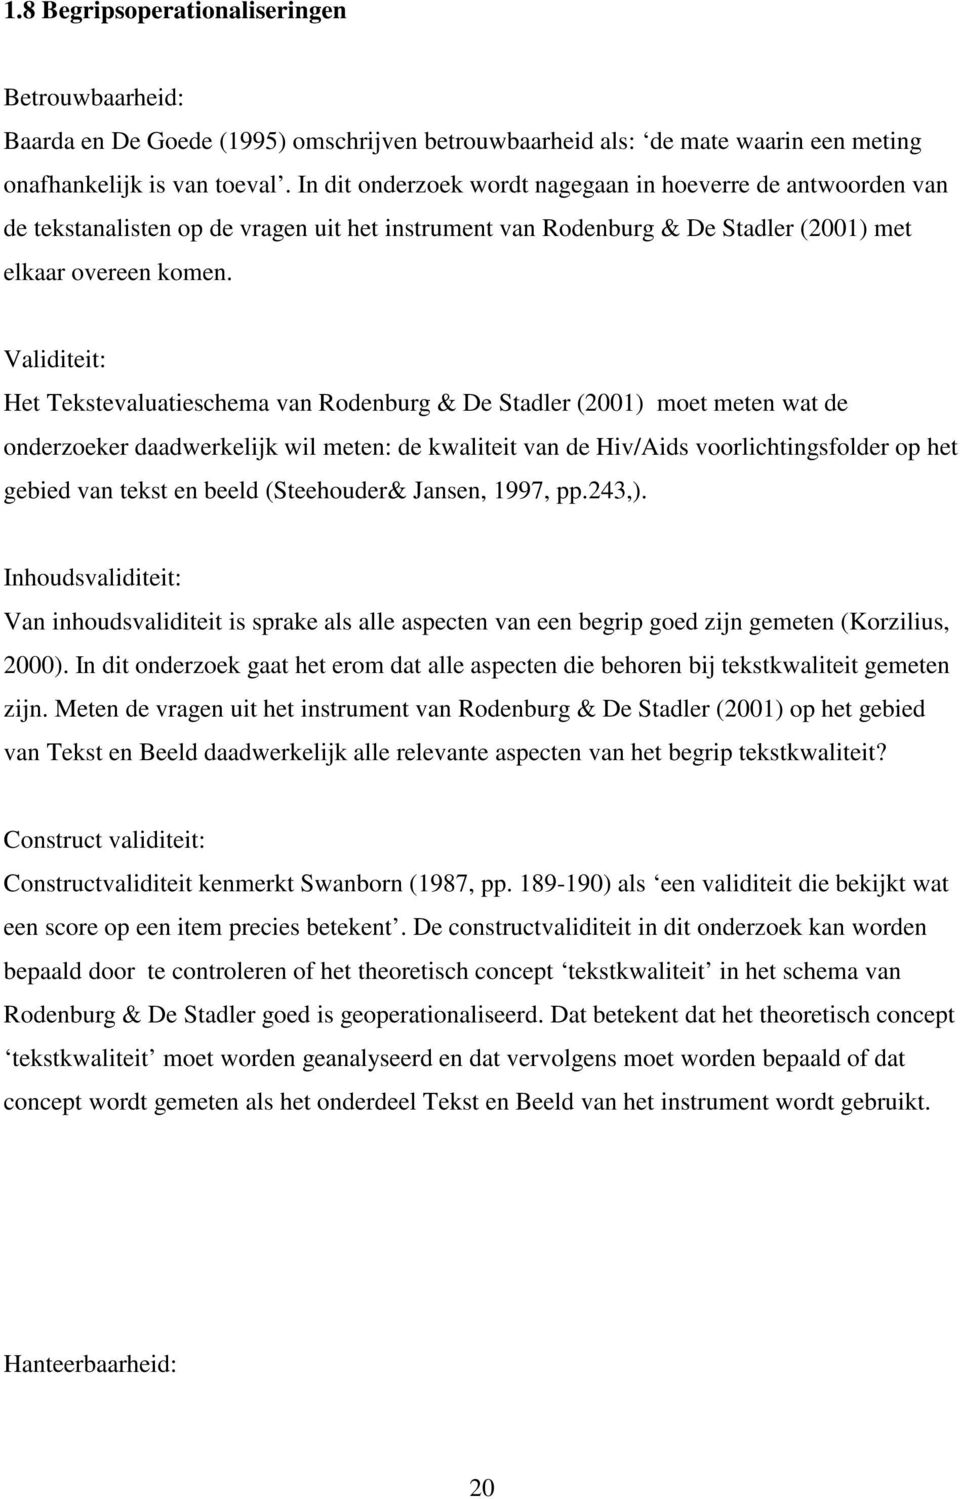 Validiteit: Het Tekstevaluatieschema van Rodenburg & De Stadler (2001) moet meten wat de onderzoeker daadwerkelijk wil meten: de kwaliteit van de Hiv/Aids voorlichtingsfolder op het gebied van tekst